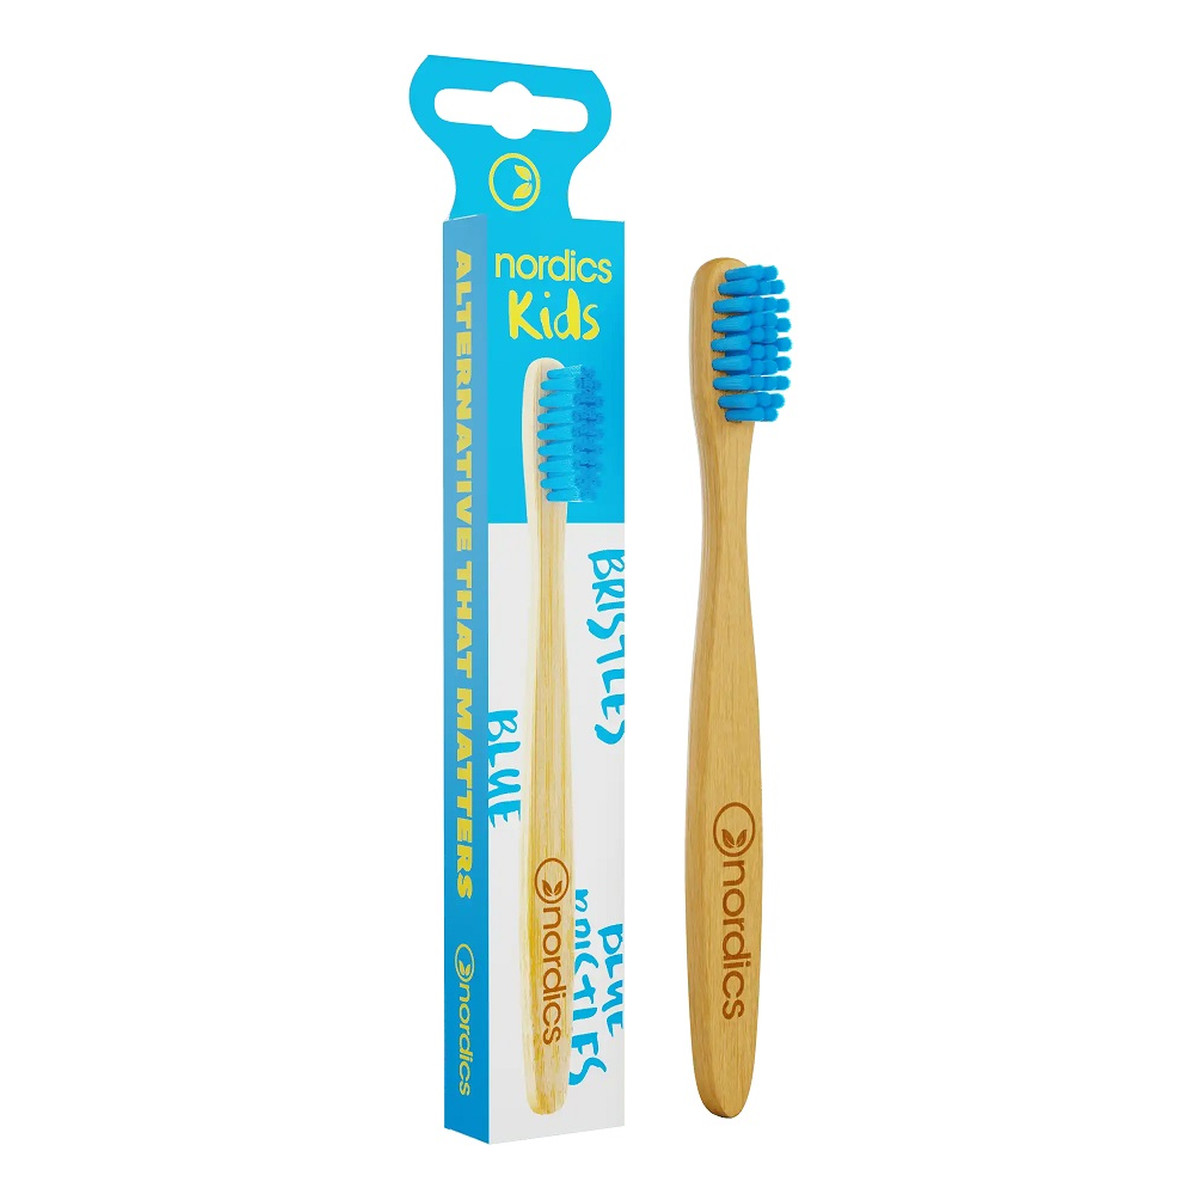 Nordics Kids bamboo toothbrush bambusowa szczoteczka do zębów dla dzieci blue